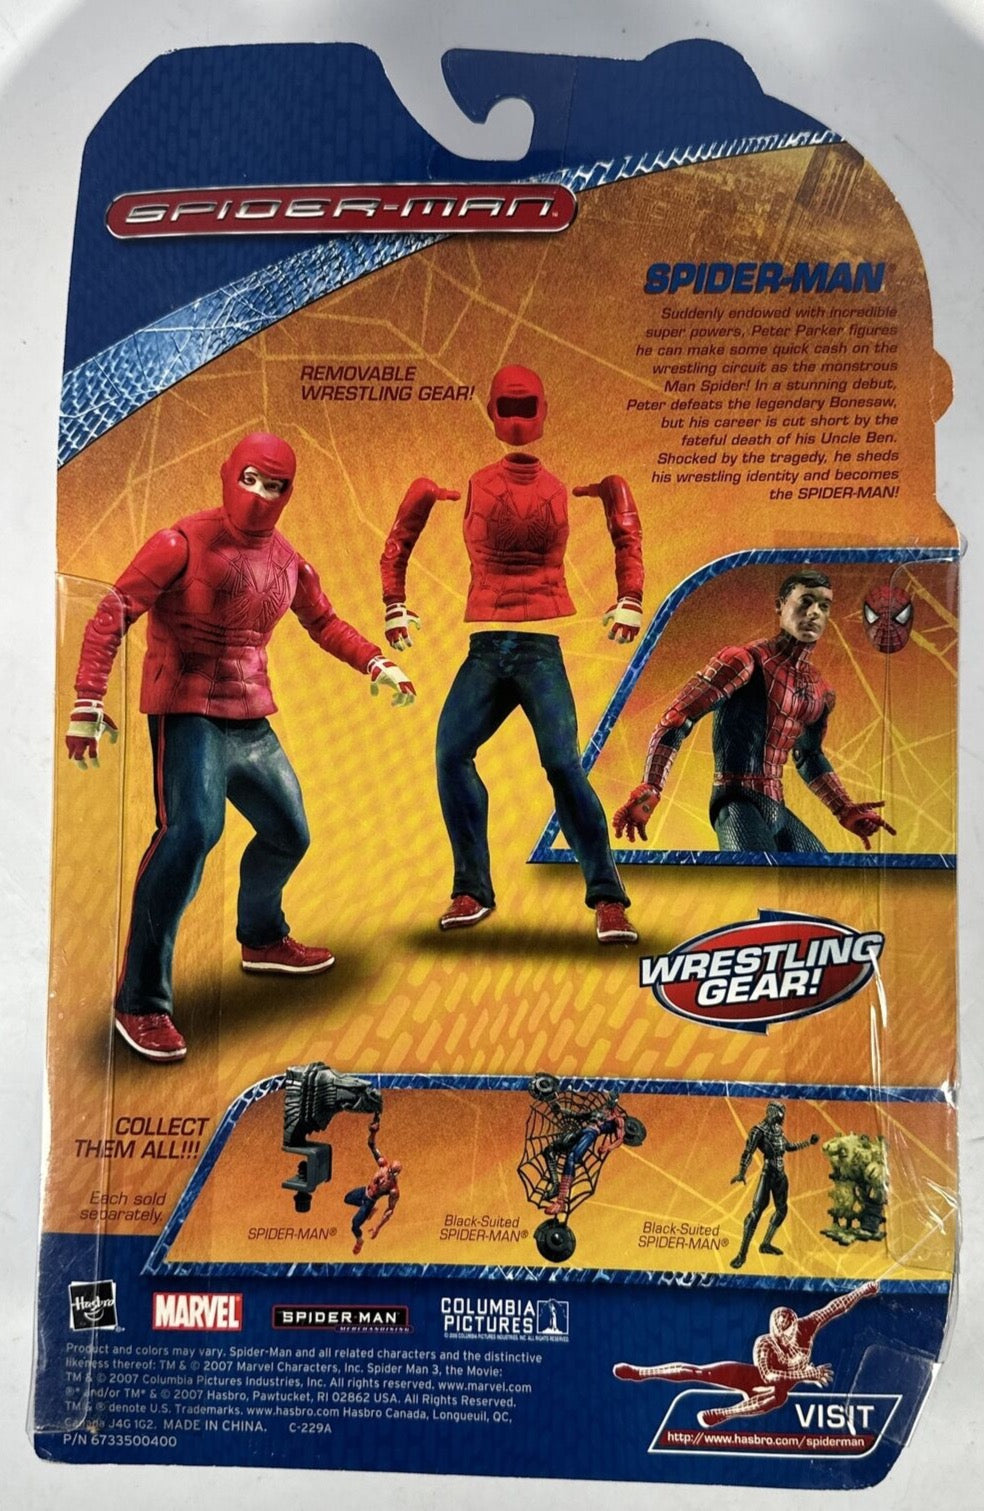 2007 Hasbro "Spider-Man" Spider-Man with Wrestling Gear